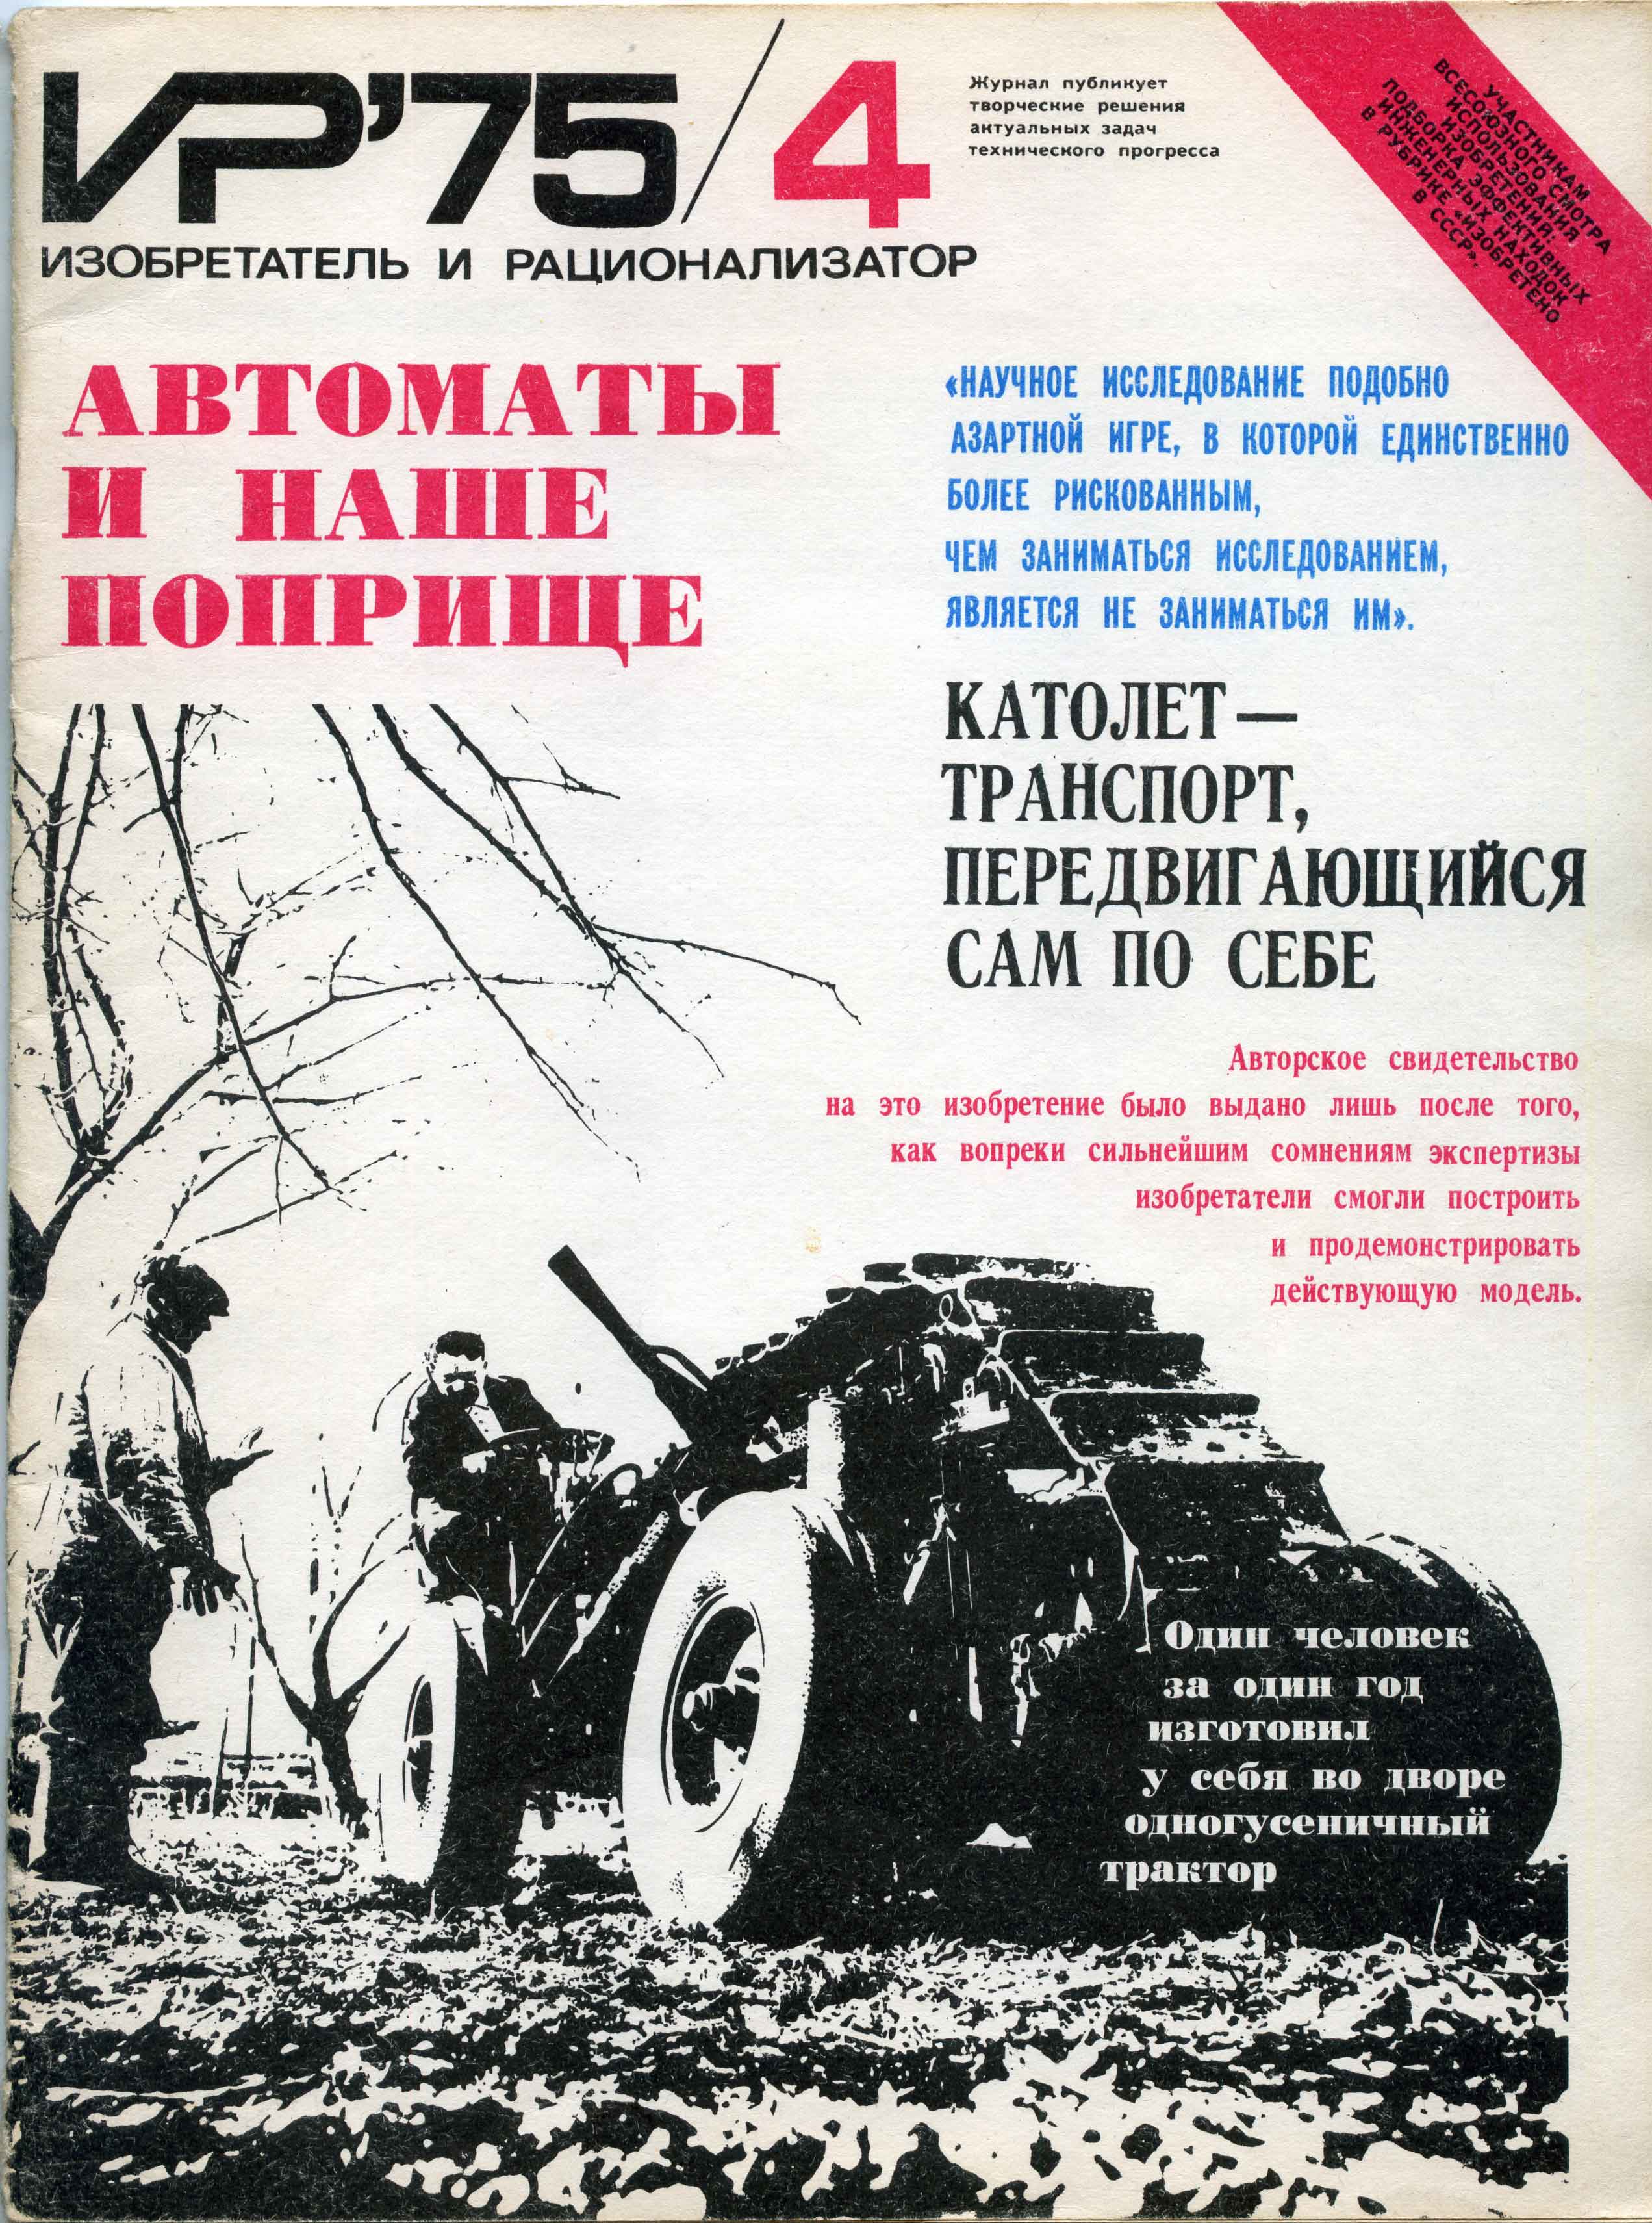 На обложке ИР75/4 – одногусеничный трактор Давида Цагарейшвили.